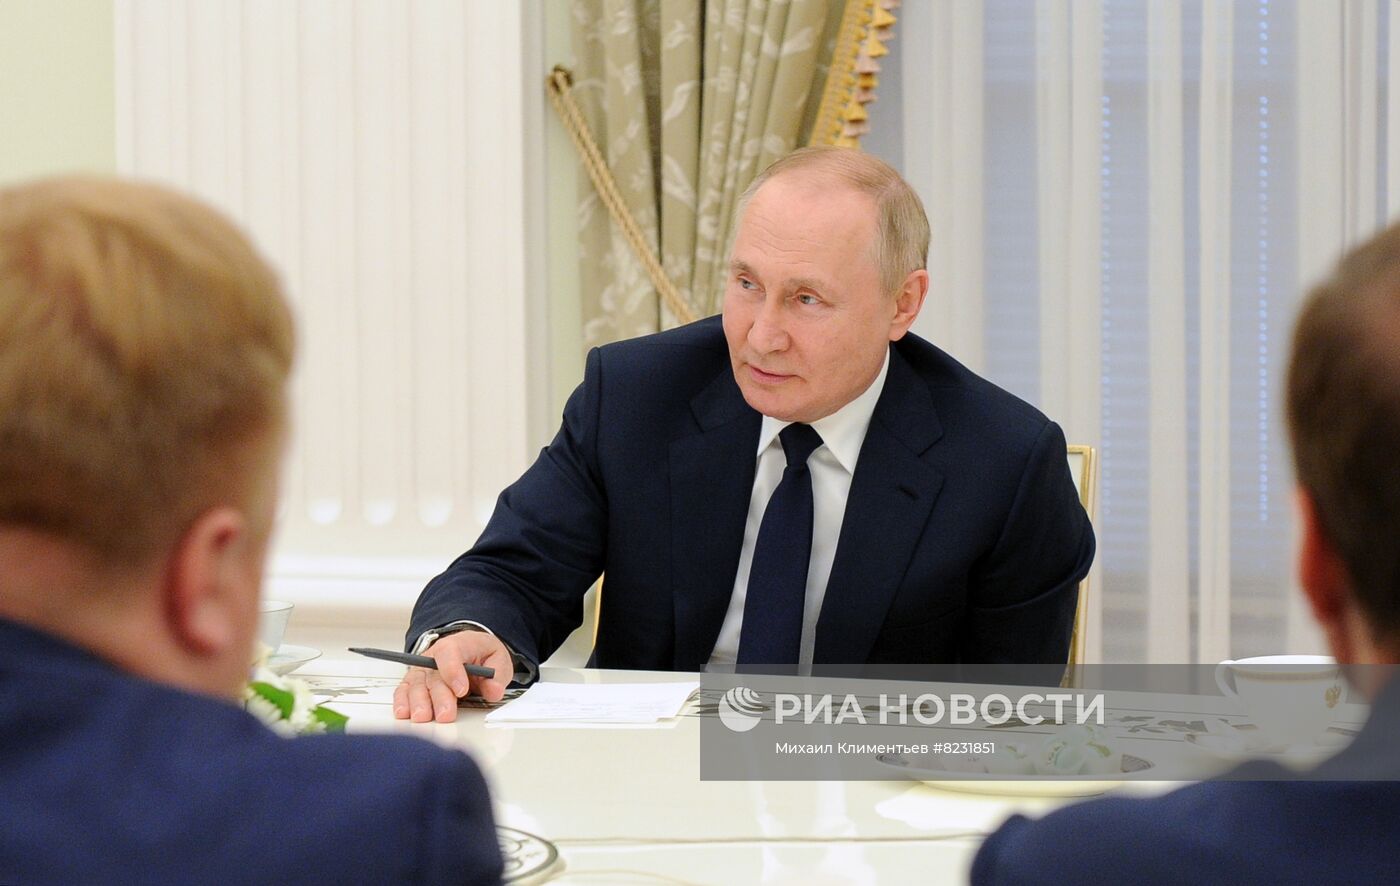 Рабочая встреча президента РФ В. Путина с победителями конкурса "Лидеры России"